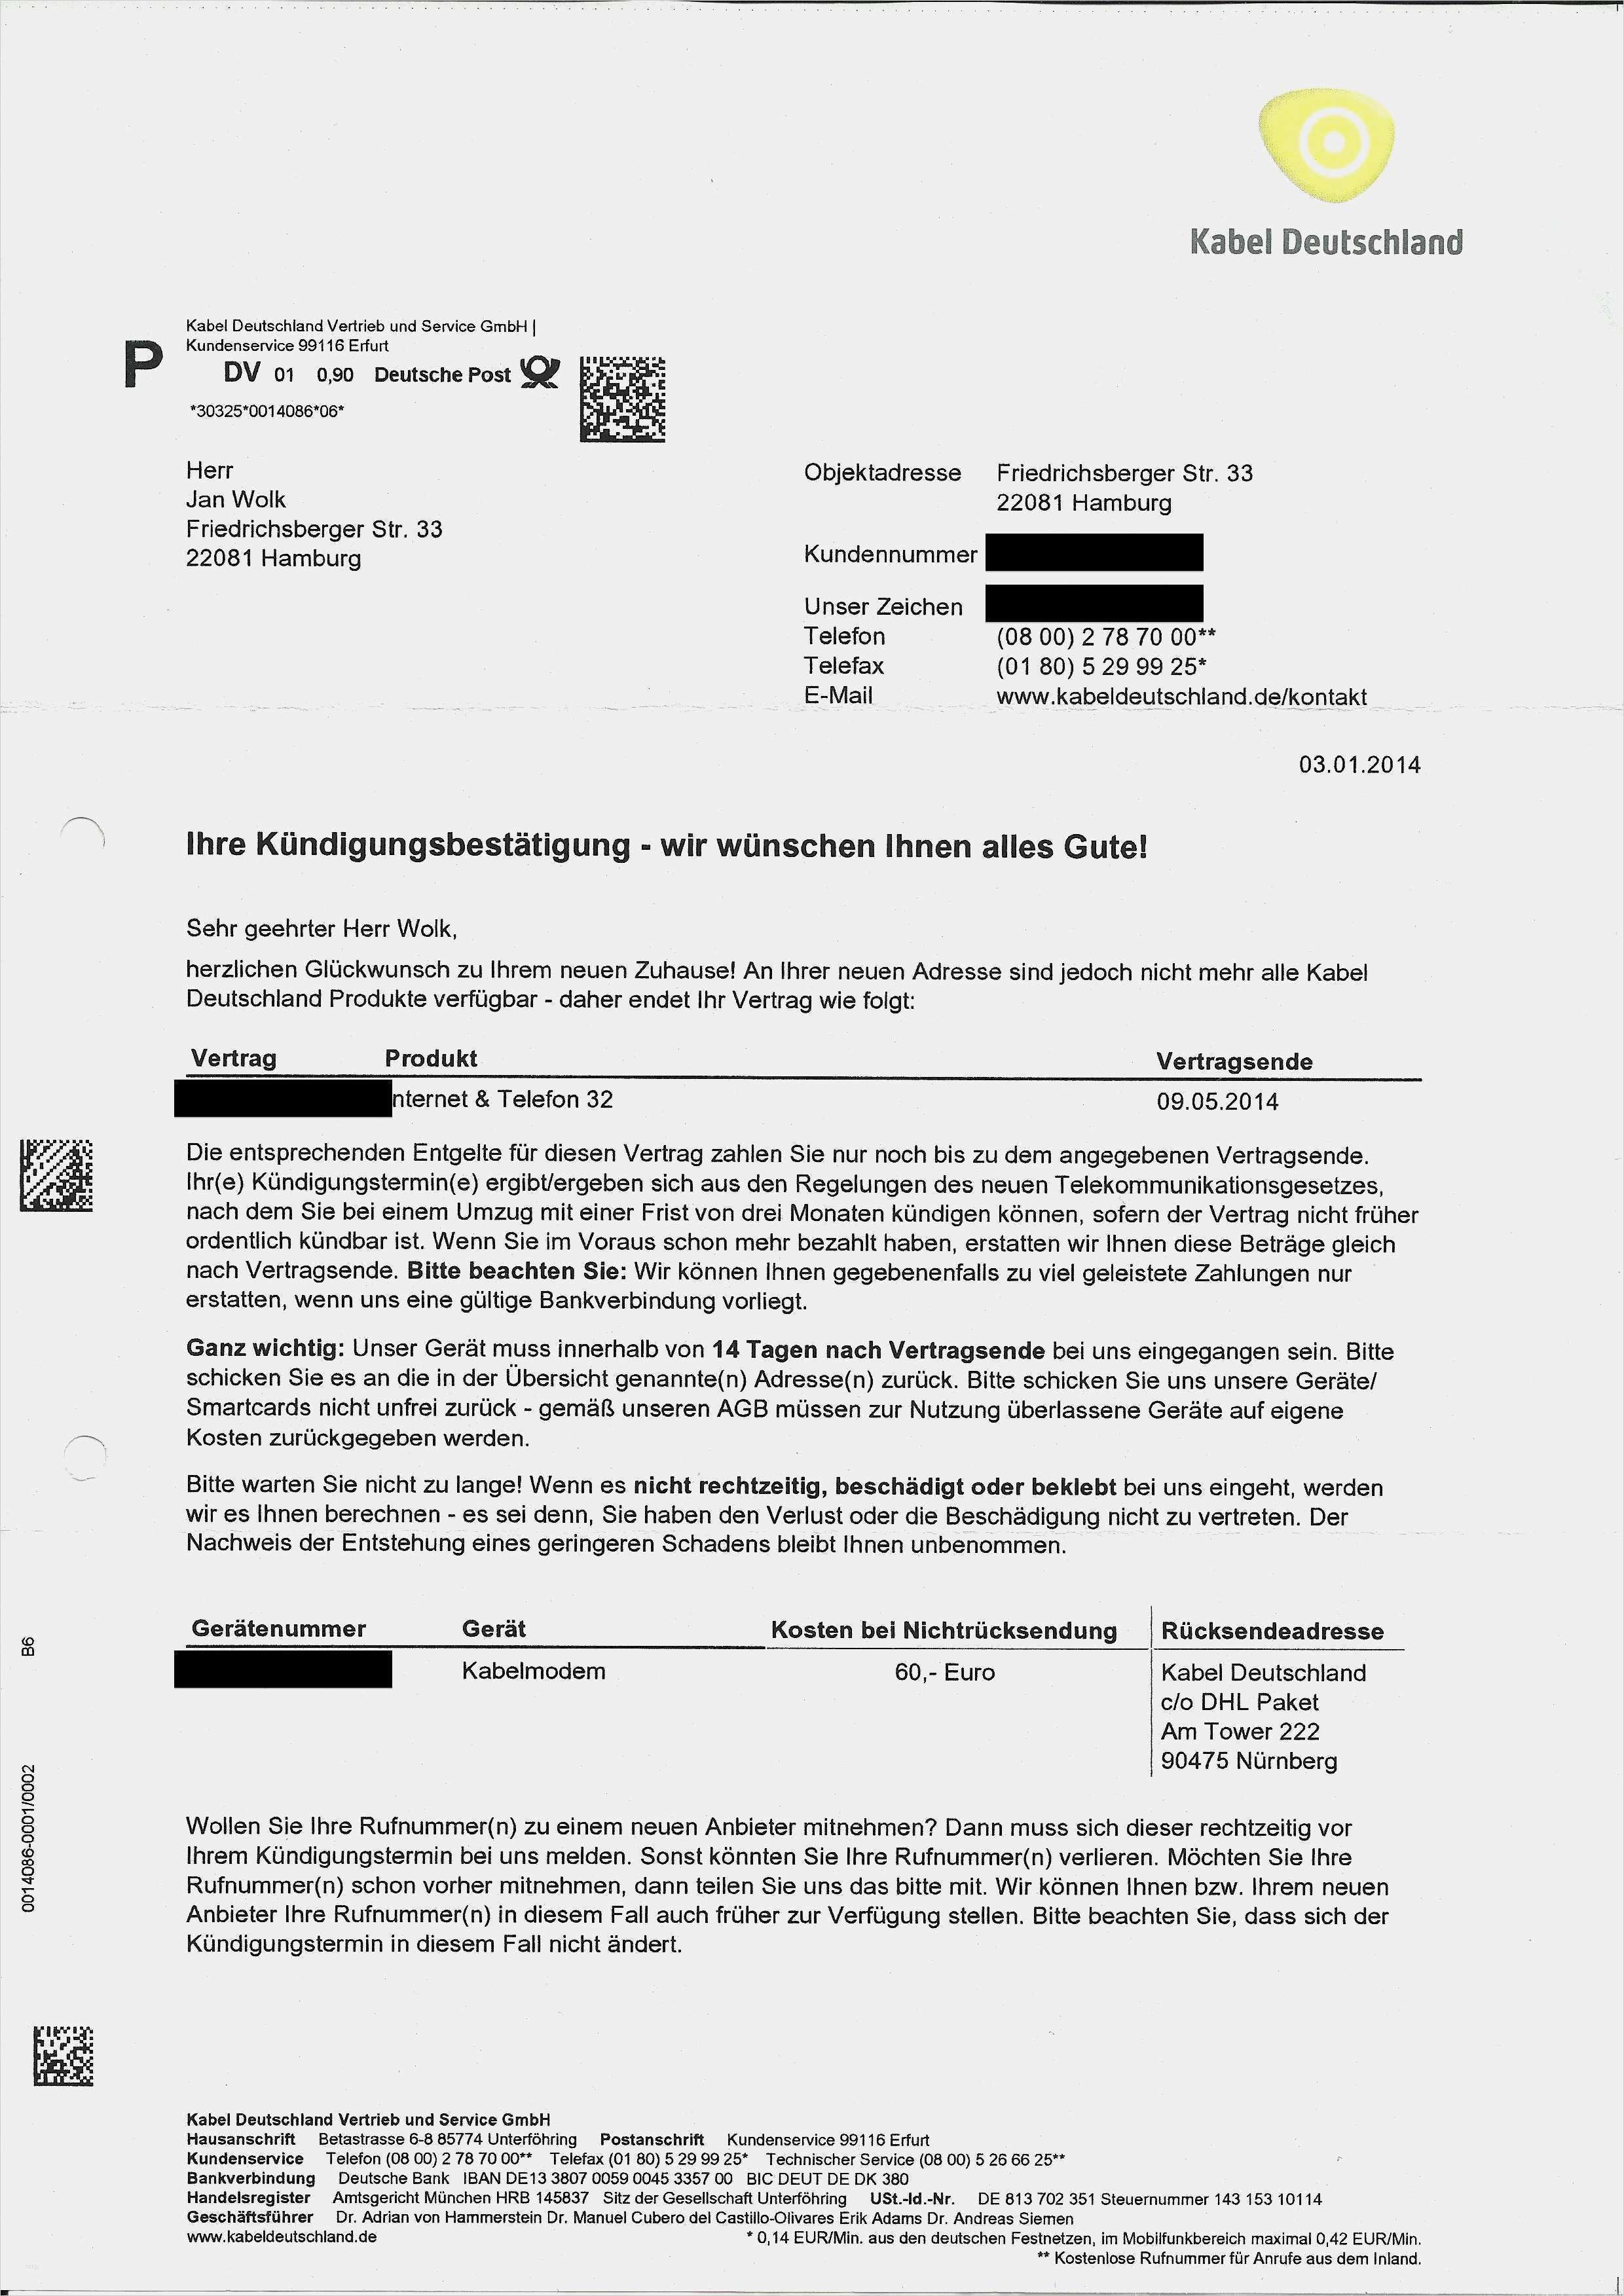 36 Luxus Kabel Deutschland Sonderkundigung Umzug Vorlage Bilder Vorlagen Arbeitszeugnis Kundigung